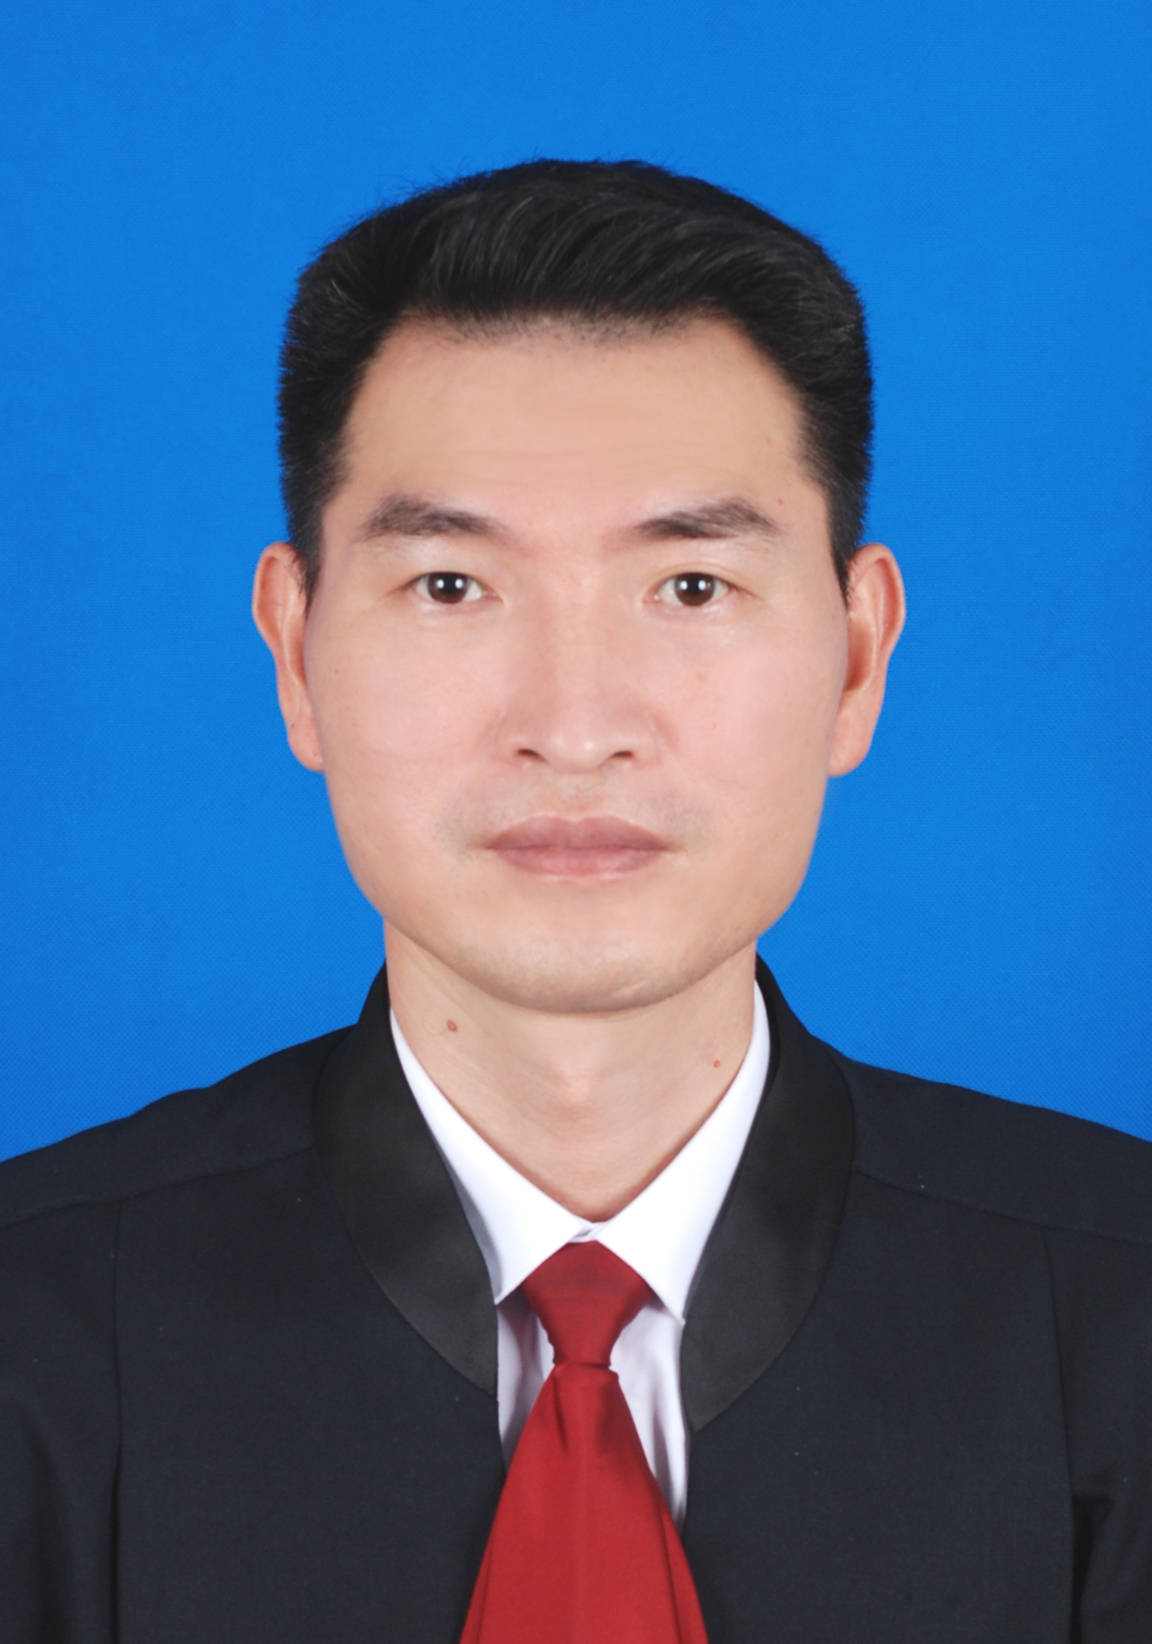 广东泓法刑辩战队负责人洪树涌律师当选为广州市第十届律师代表大会代表